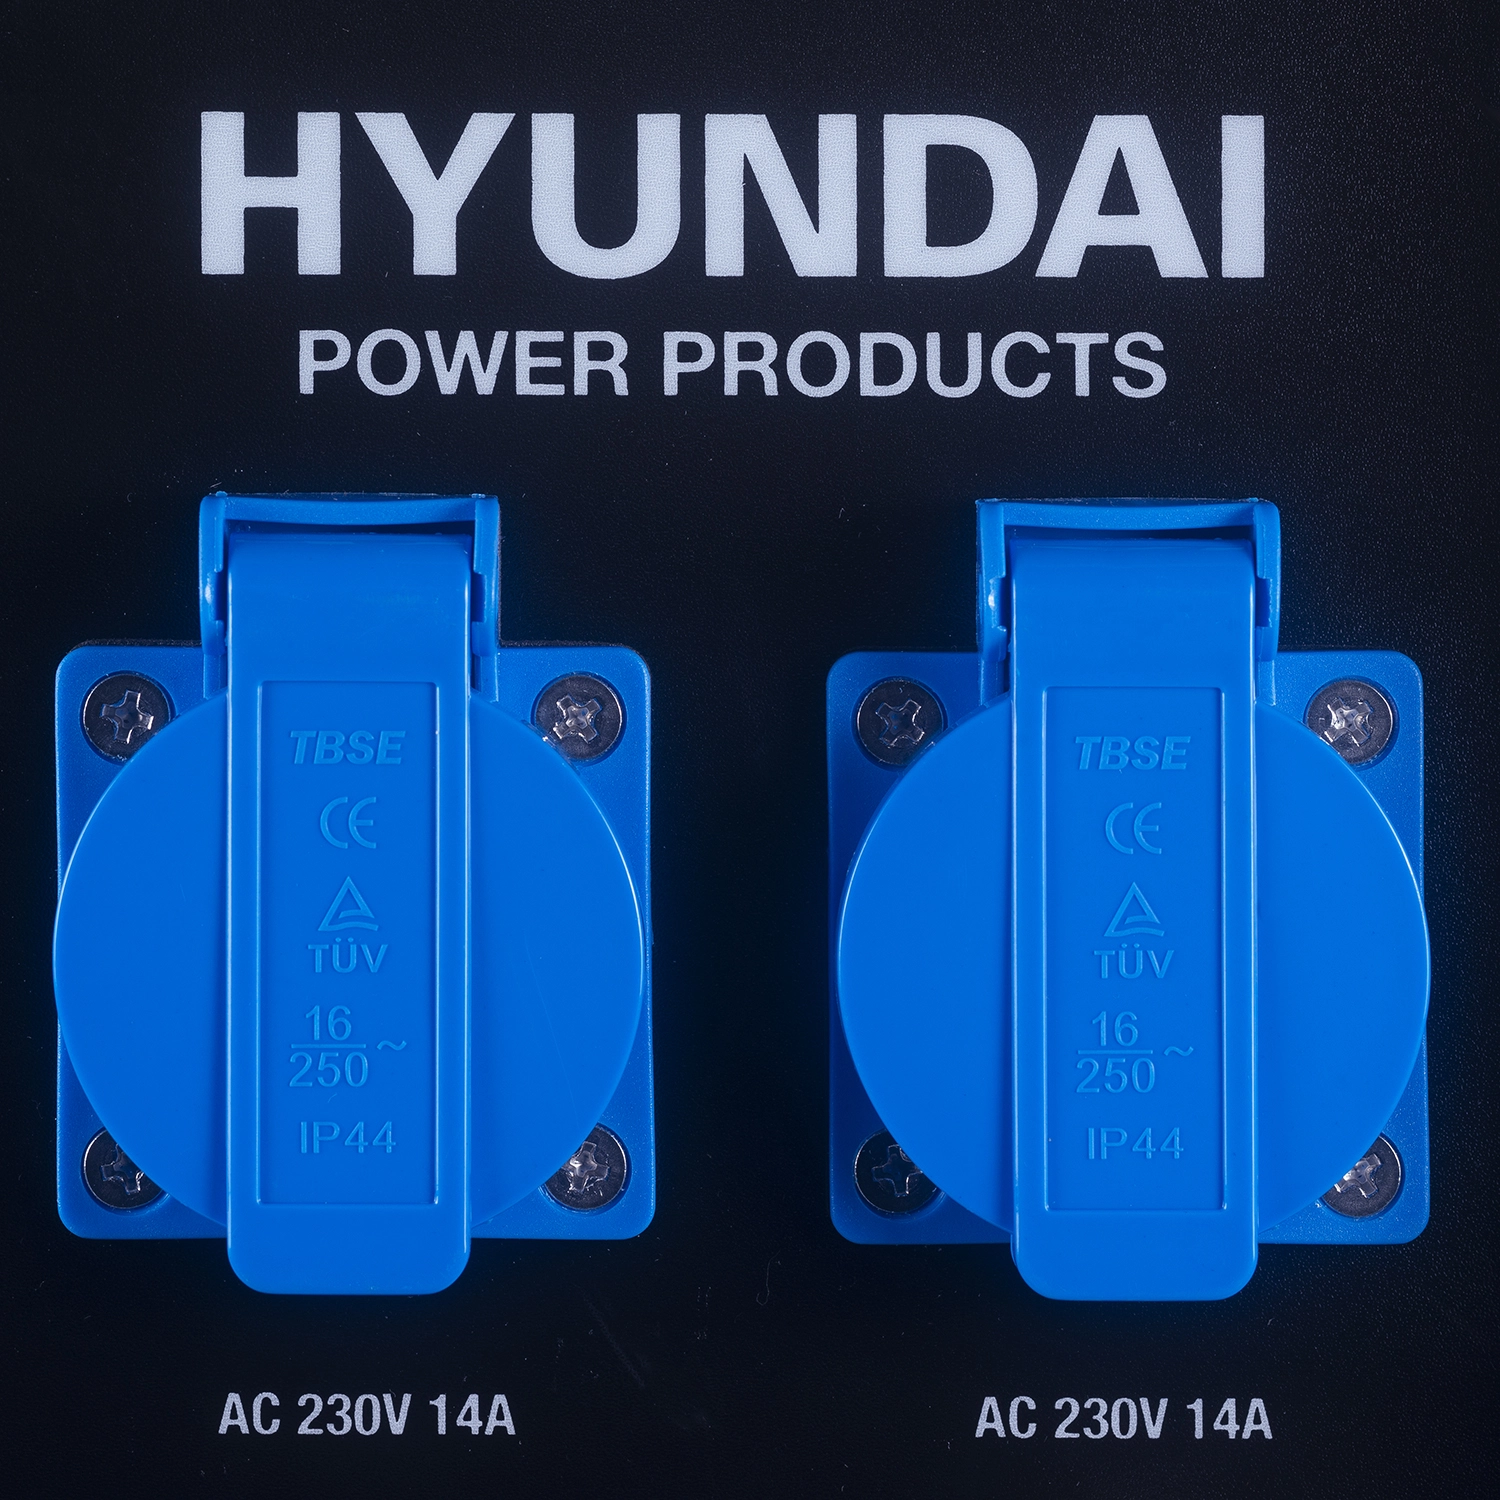 Hyundai 55017 - Convertisseur-Générateur - 3200W - 212cc - Moteur OHV